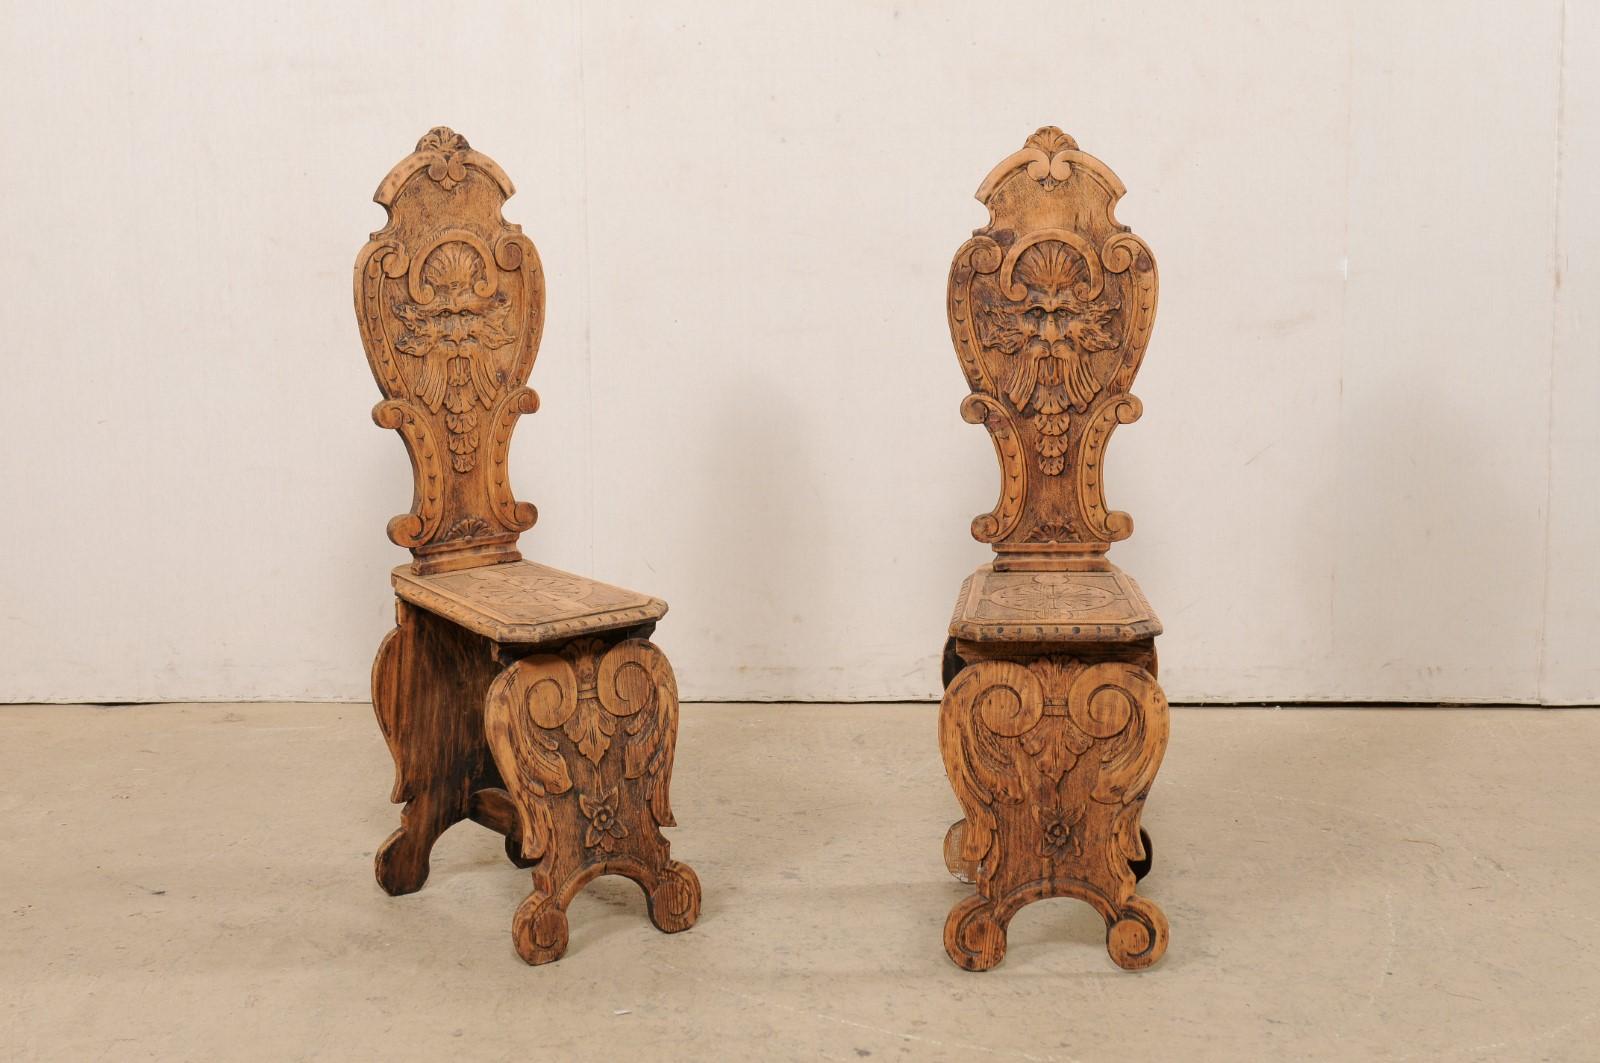 Paire de chaises Sgabelli italiennes de style Renaissance, datant du tournant des 19e et 20e siècles. Cette paire de chaises anciennes en bois provenant d'Italie (souvent appelées chaises Sgabello, des chaises d'entrée sculptées de manière élaborée